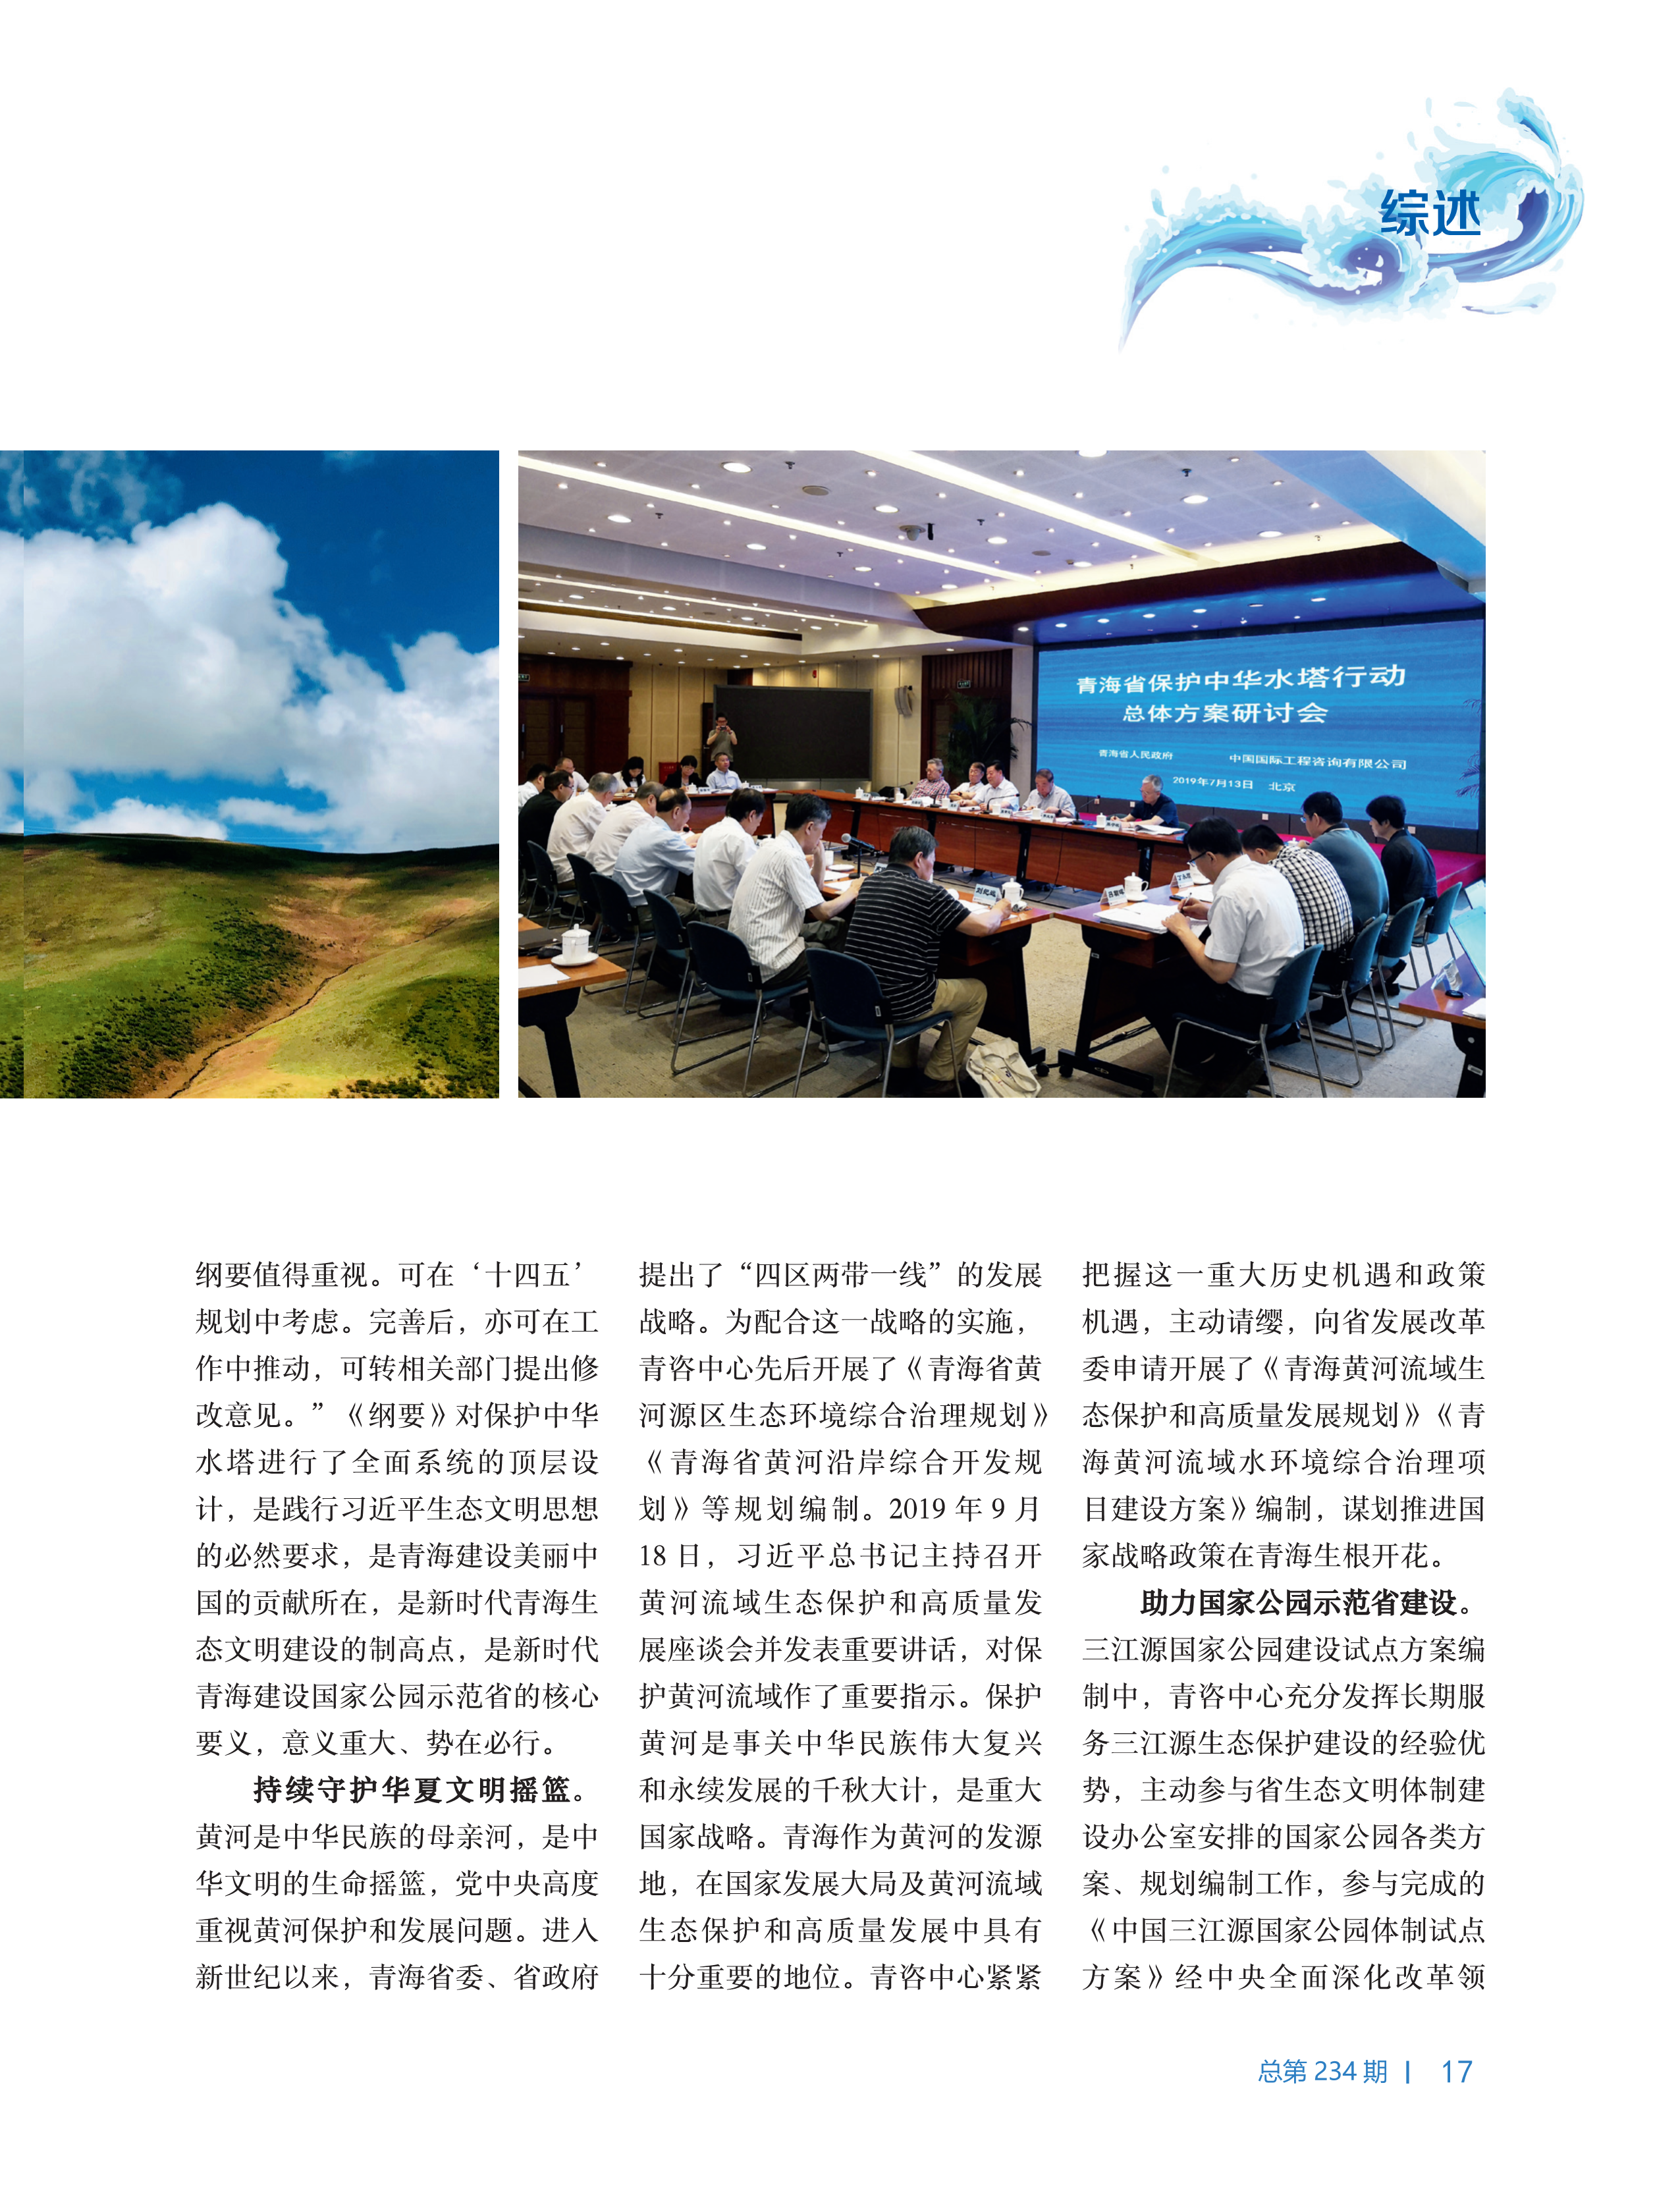 中国工程咨询2019年第十一期-复件-1_17